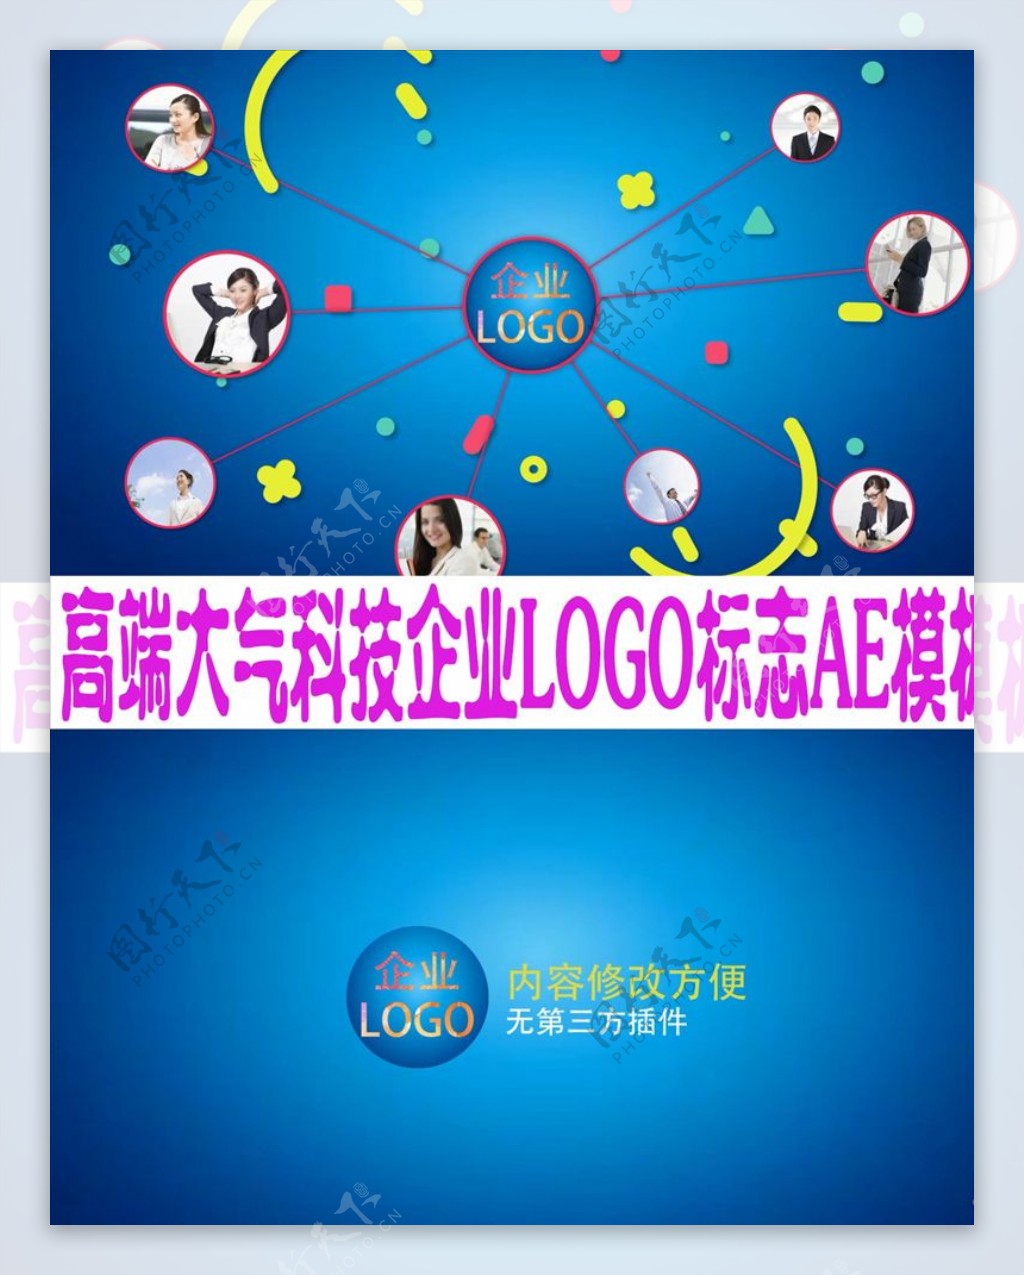 高端大气科技企业LOGO标志